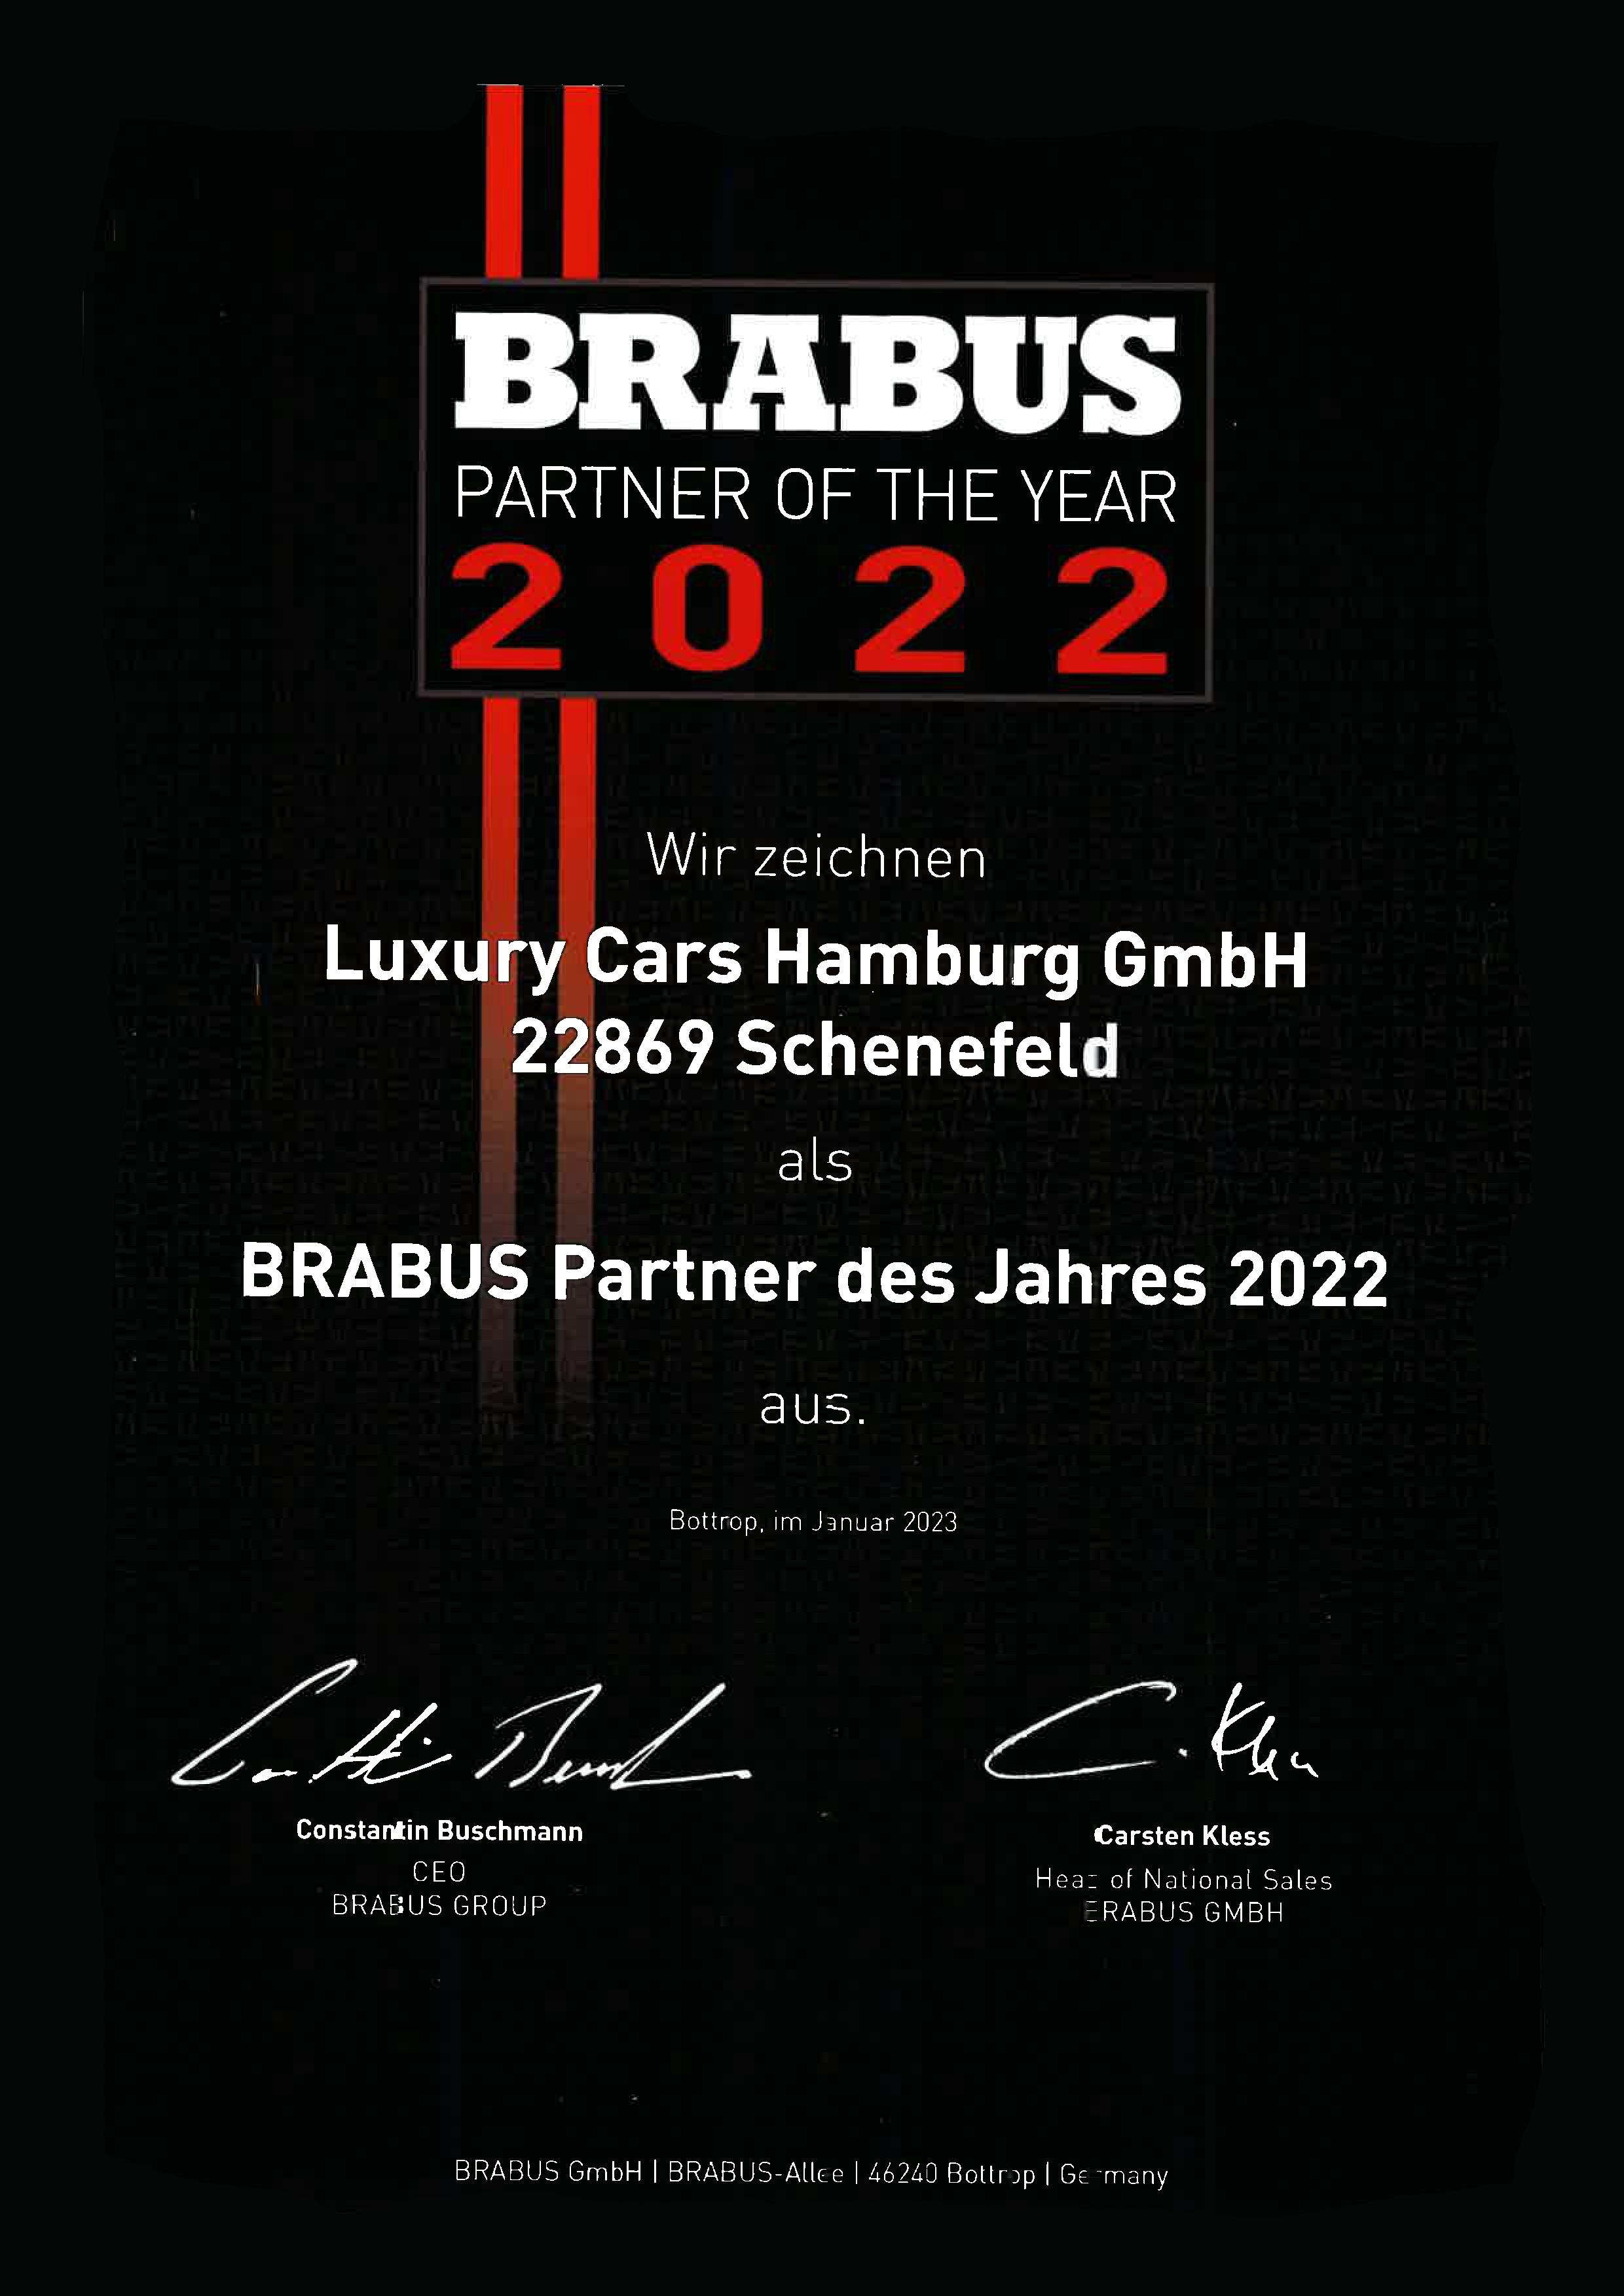 BRABUS Partner des Jahres 2022